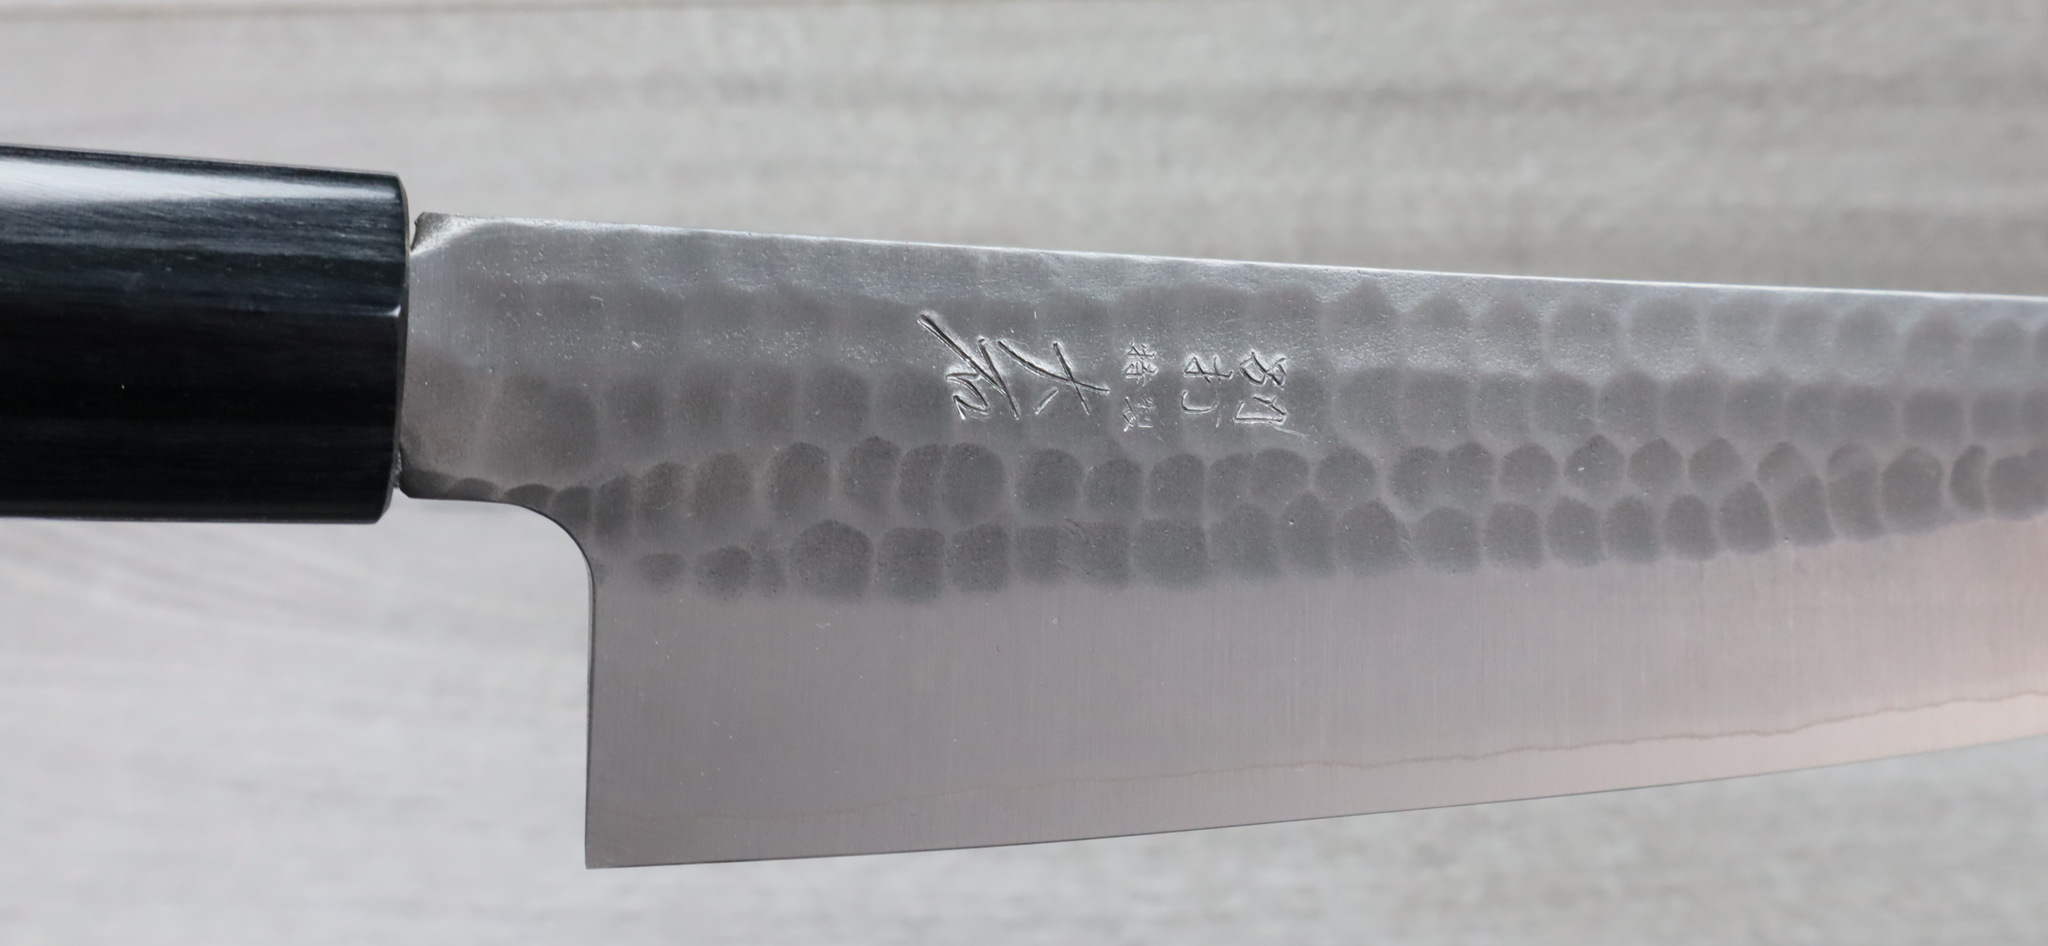 Ohishi,SLD - Migaki TsuchimeGyuto(Chef Knife)210mm